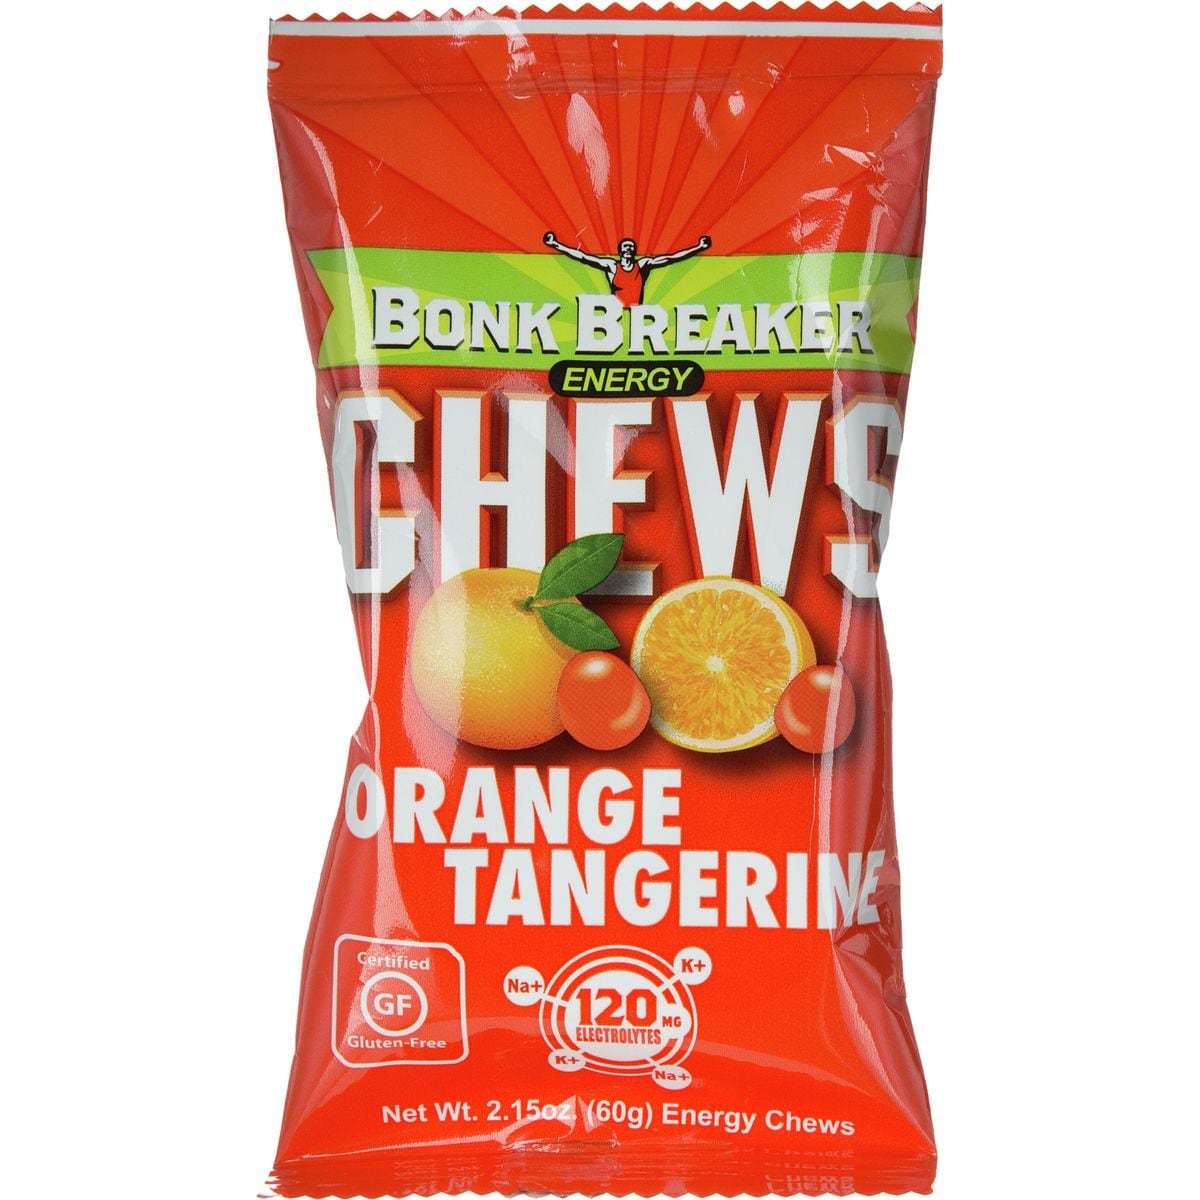 Bonk Breaker Chews Tangerine Orange, Box of 10 Packs